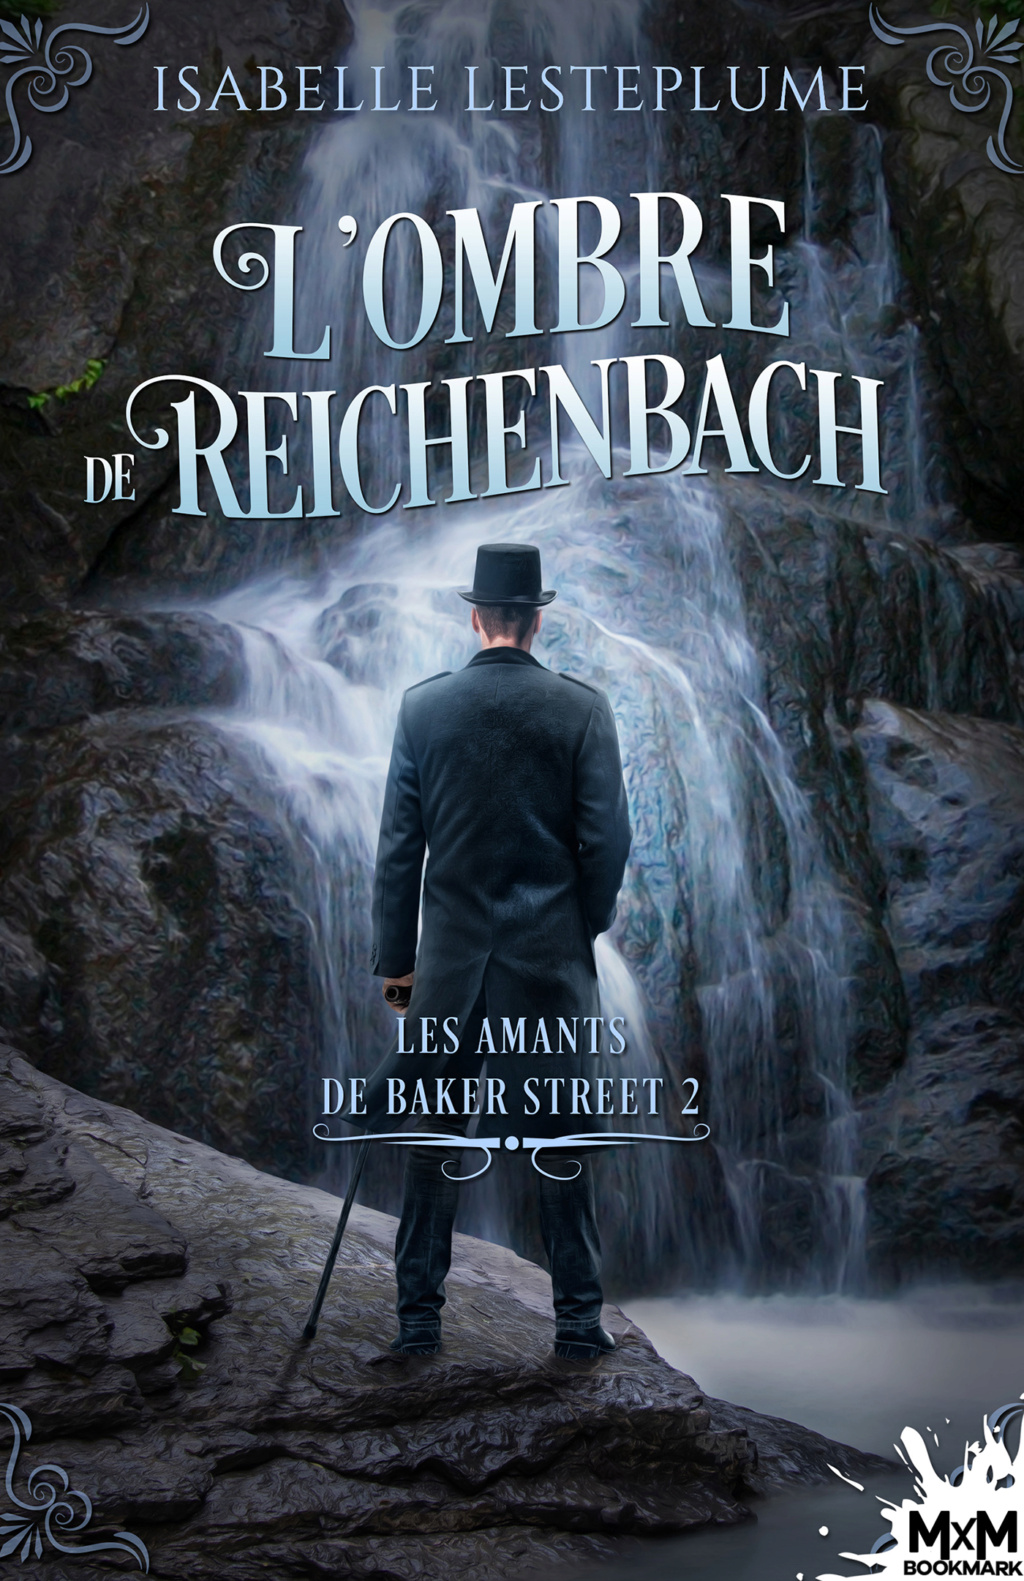 Les amants de Baker Street  - Tome 2 : L'ombre de Reinchenbach de Isabelle Lesteplume  49ad5110